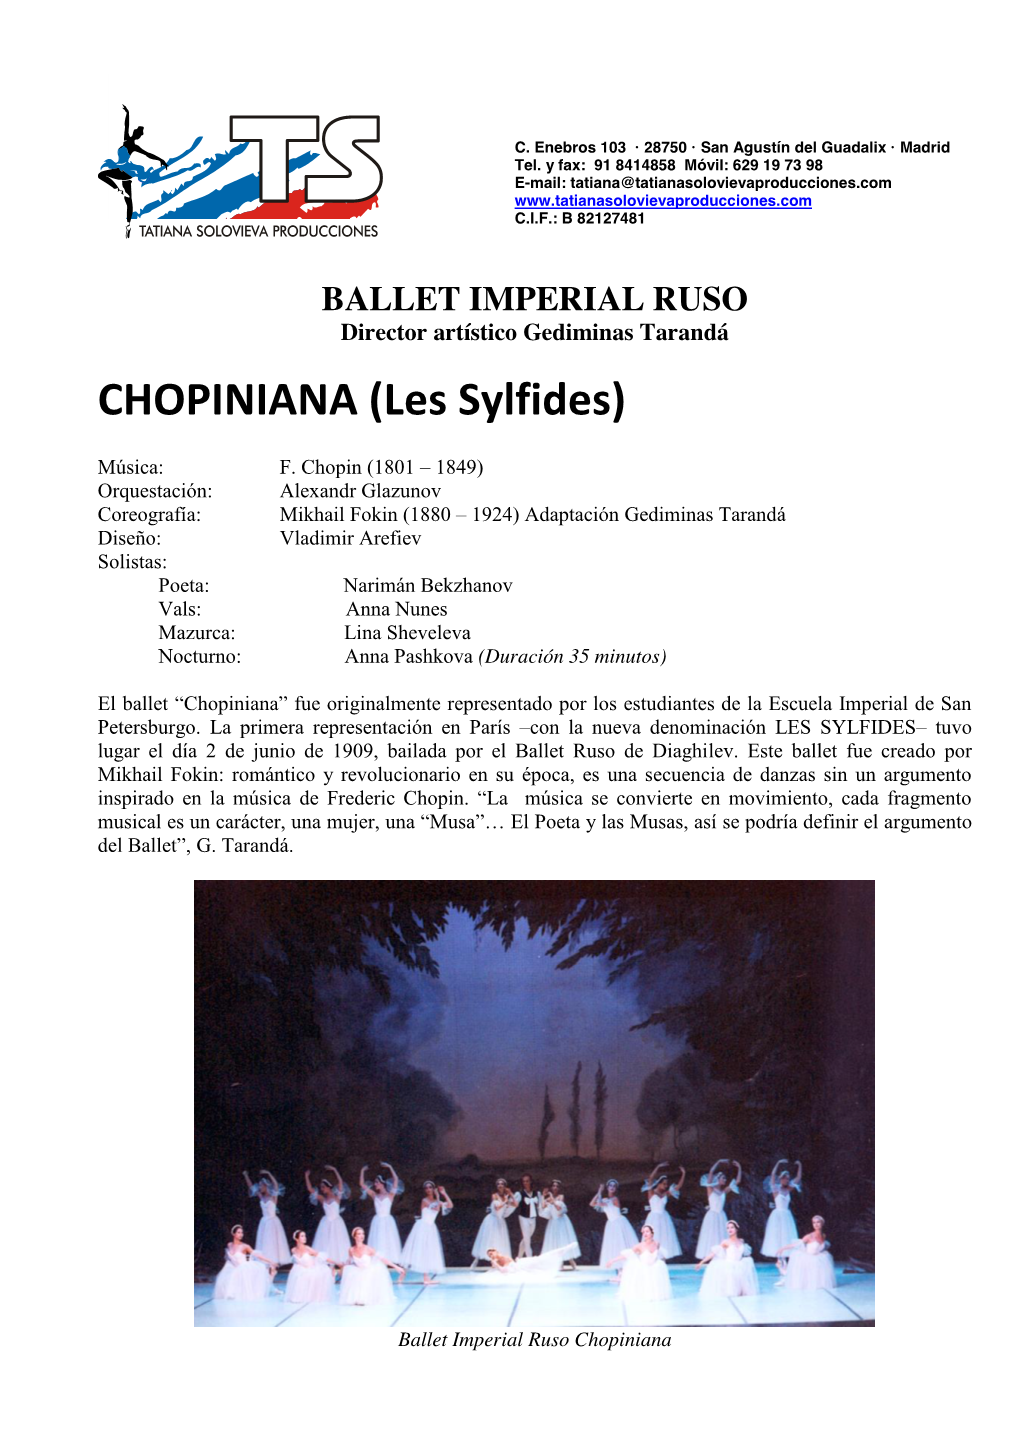 CHOPINIANA (Les Sylfides)